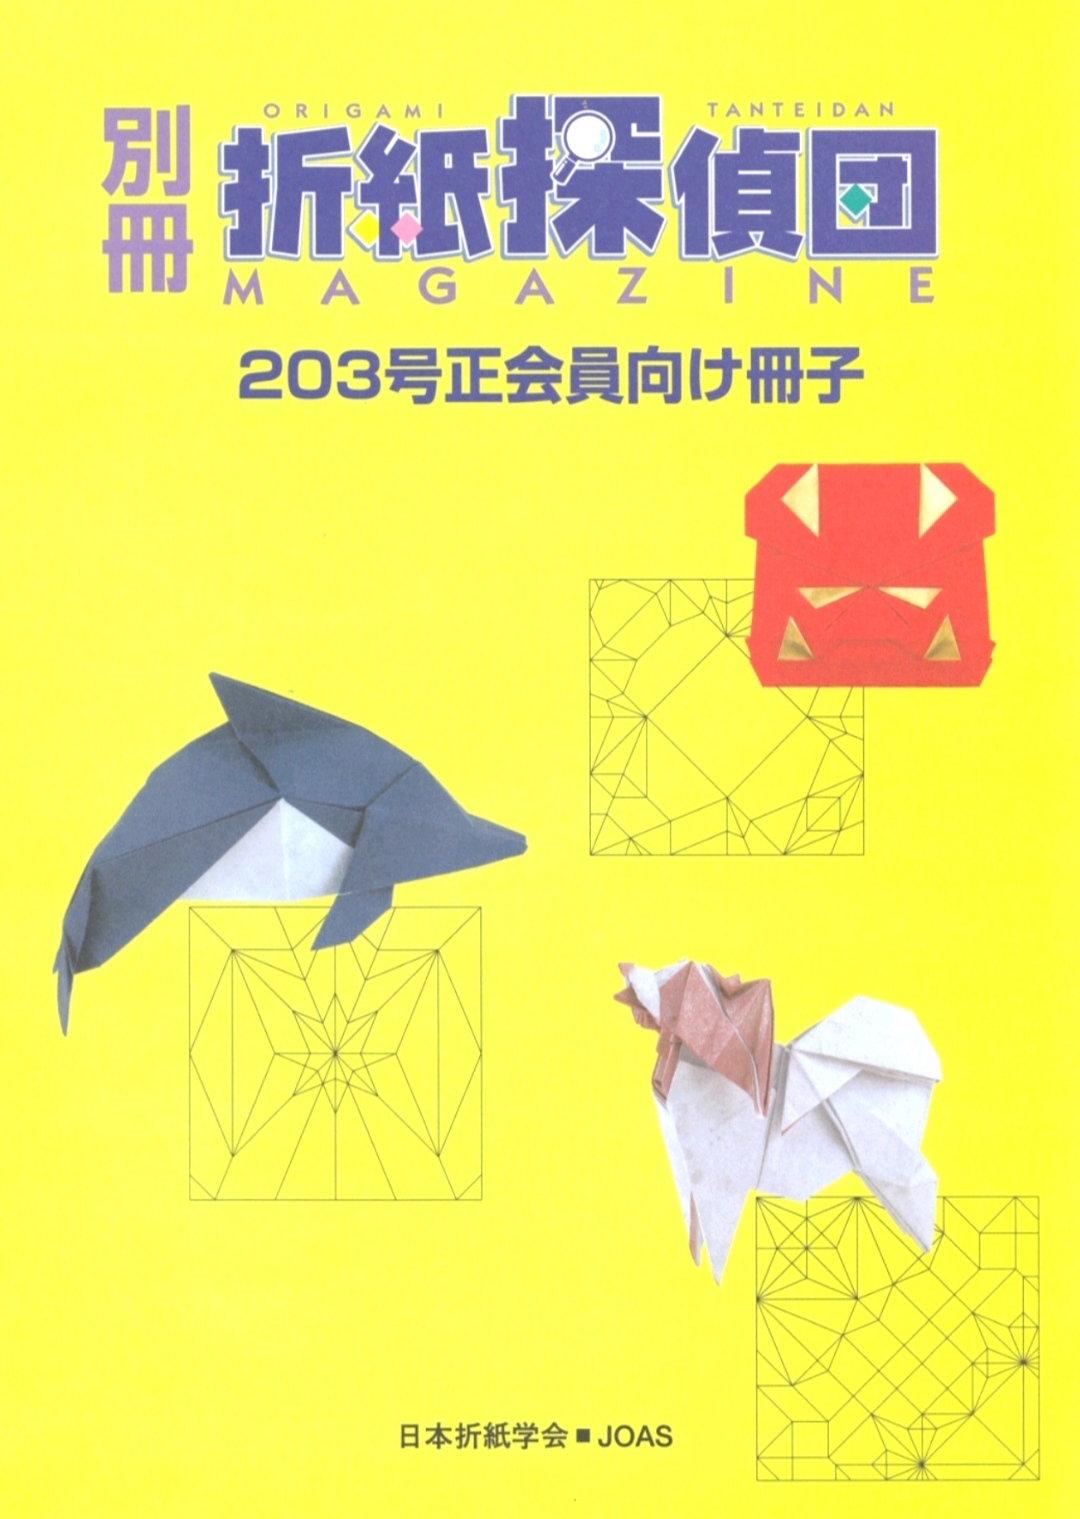 Origami Tanteidan Magazine 203 extra : page 14.